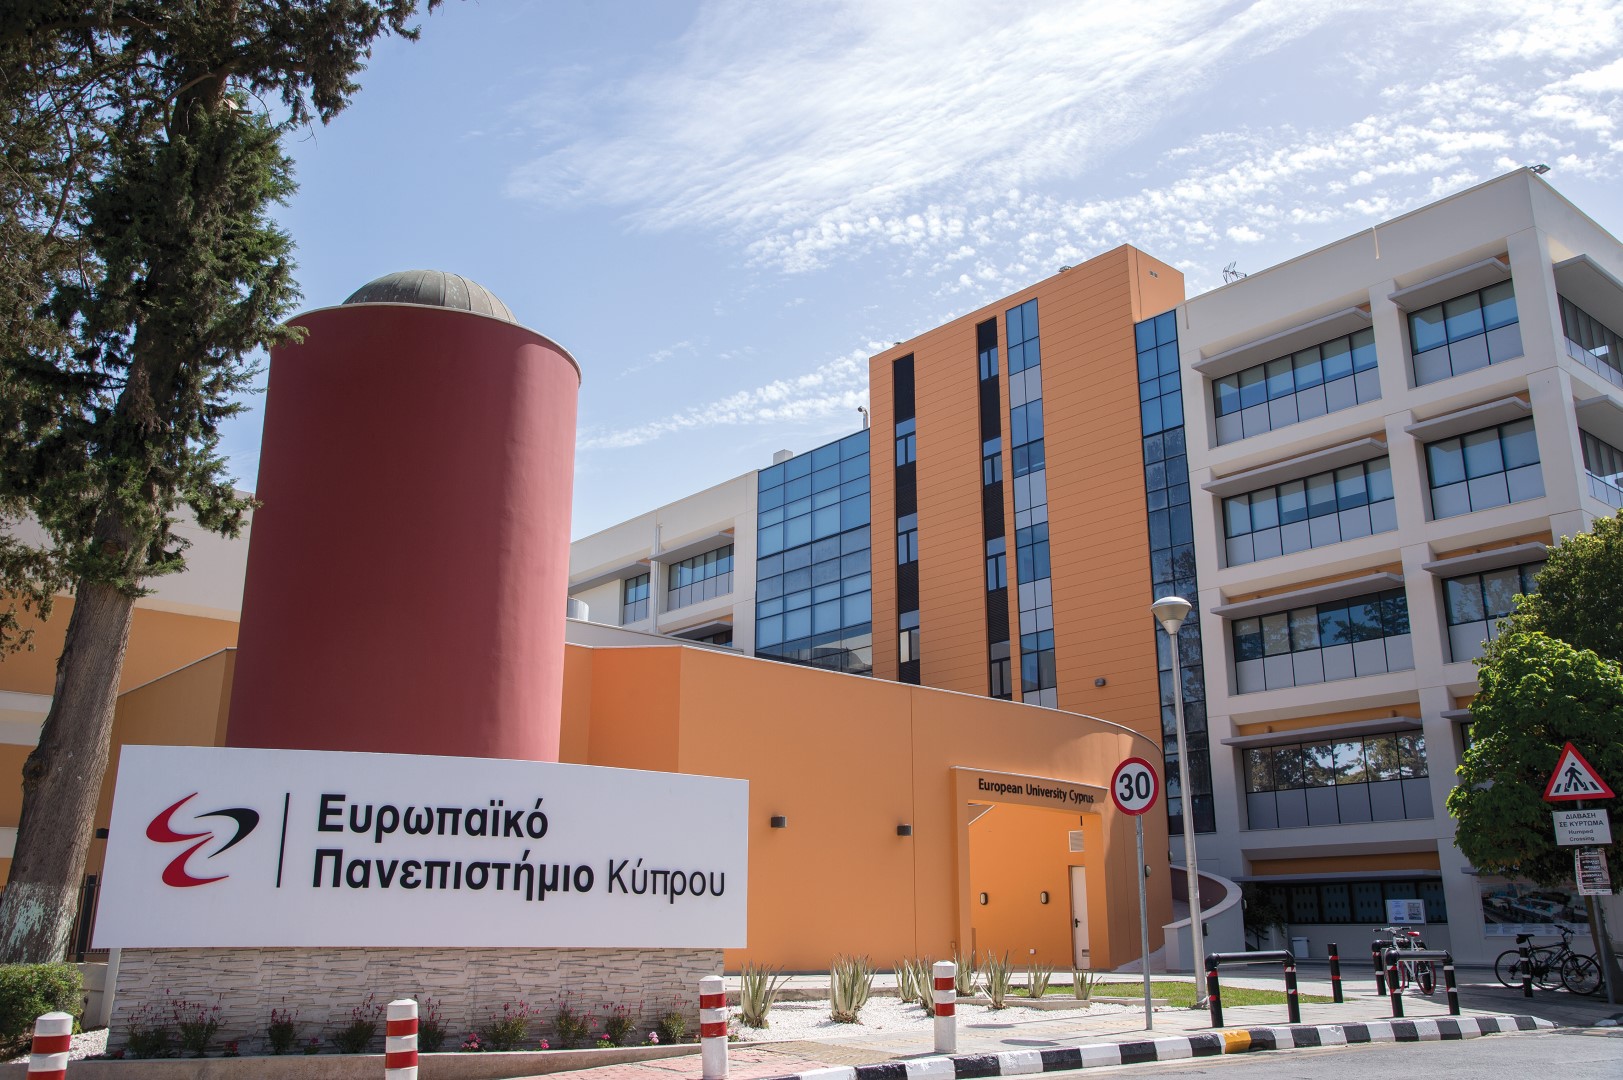 Το Ευρωπαϊκό Πανεπιστήμιο Κύπρου διοργανώνει διαδικτυακό φοιτητικό συνέδριο για την Ακτινοδιαγνωστική – Ακτινοθεραπεία